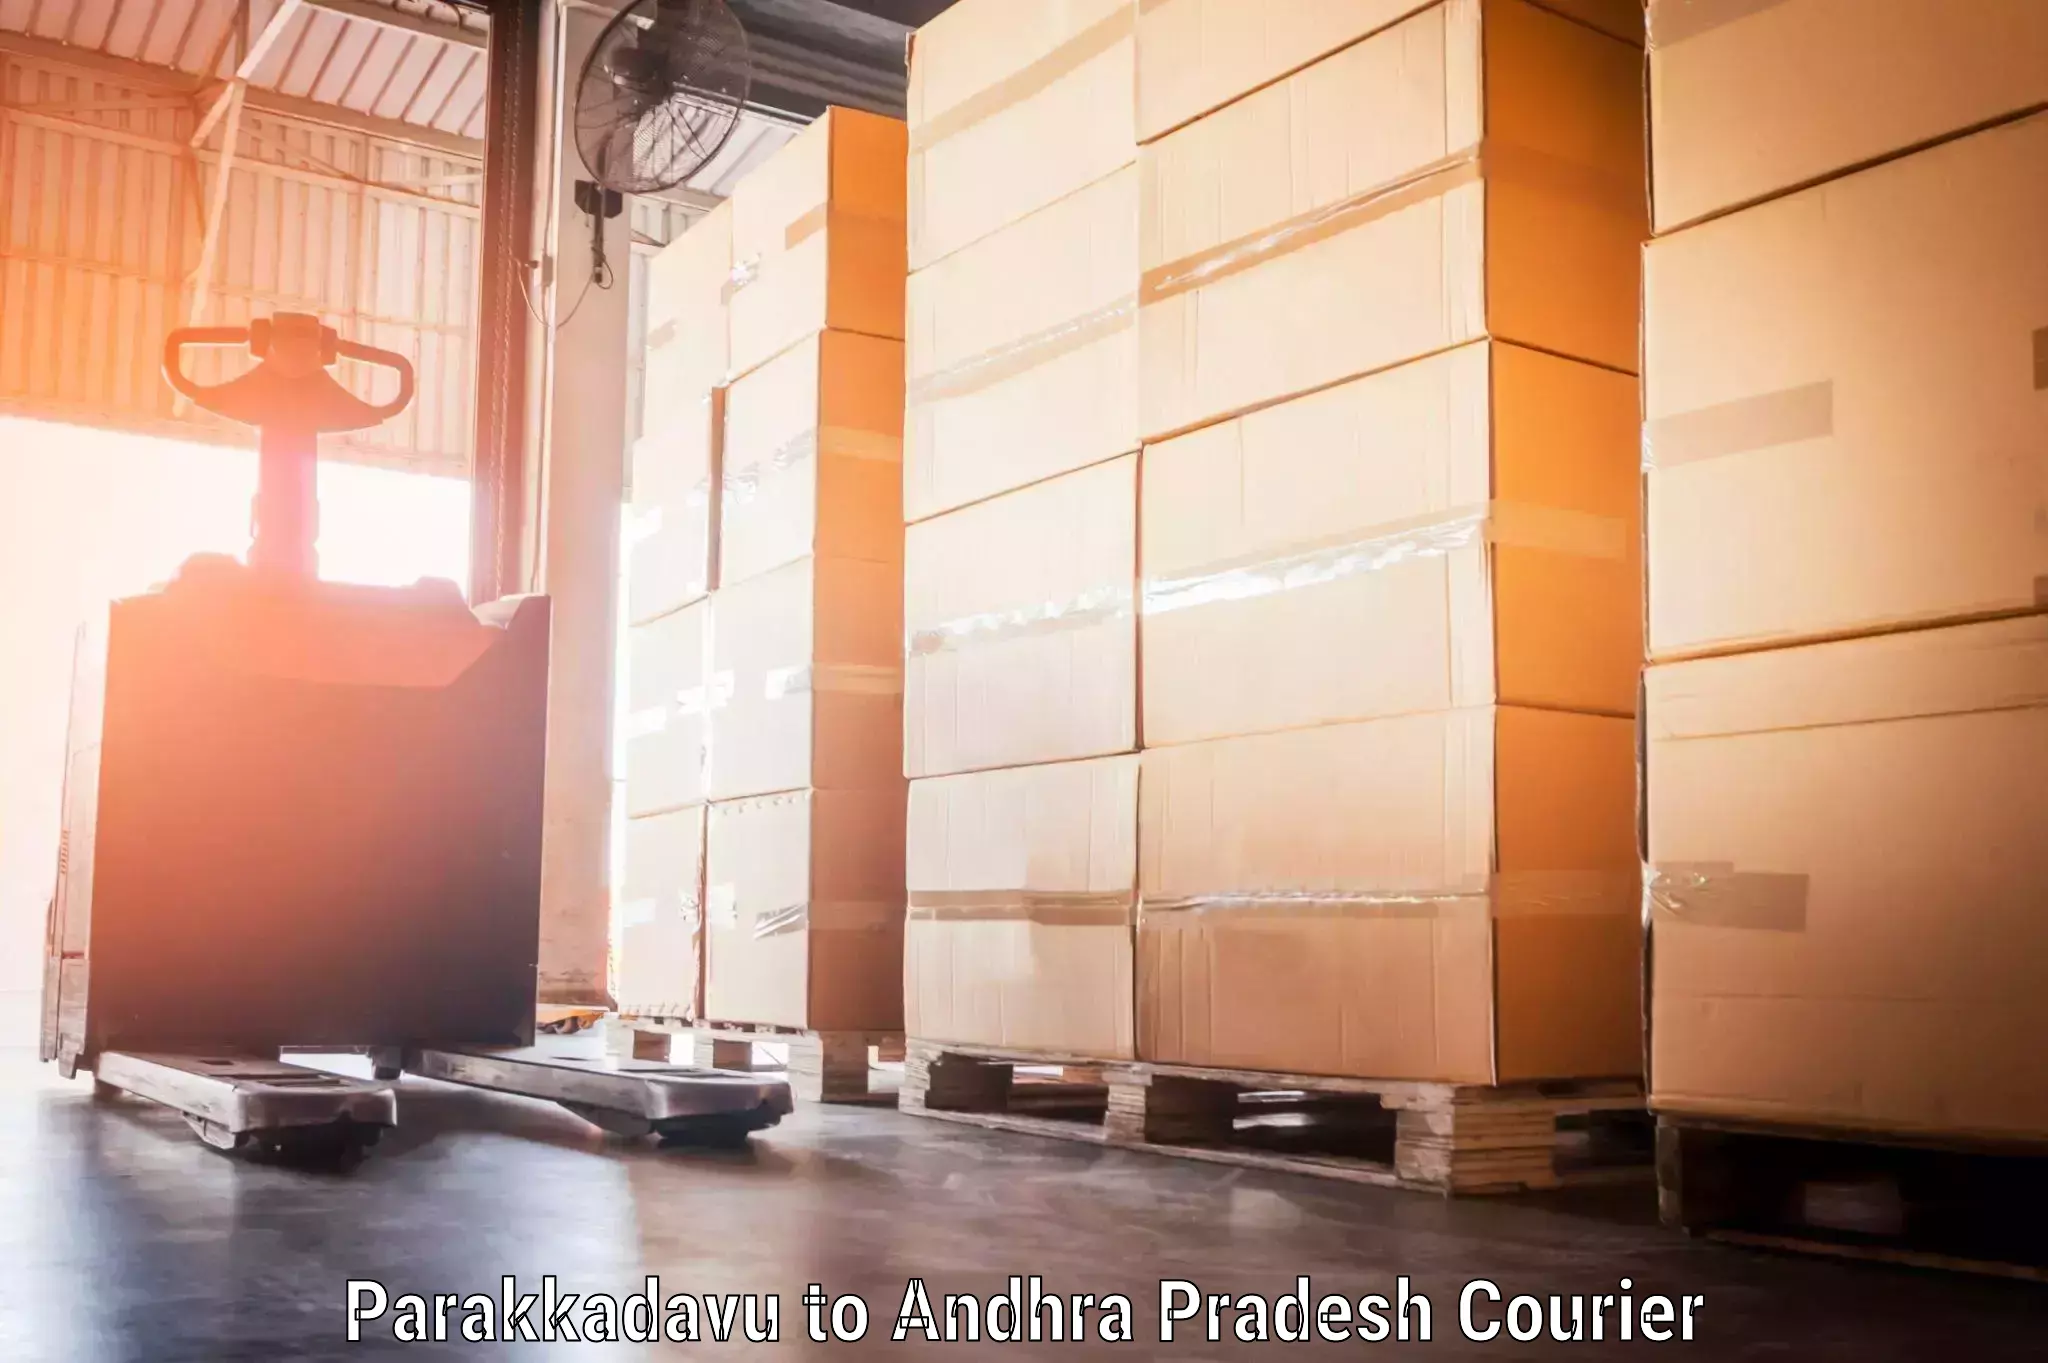 Express baggage shipping Parakkadavu to Andhra Pradesh